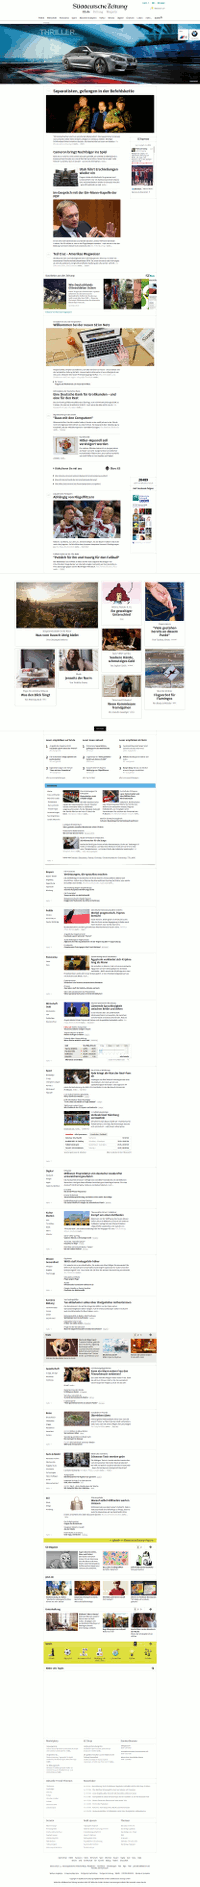 Die neue Homepage der Süddeutschen
Screenshot: Netzpresse